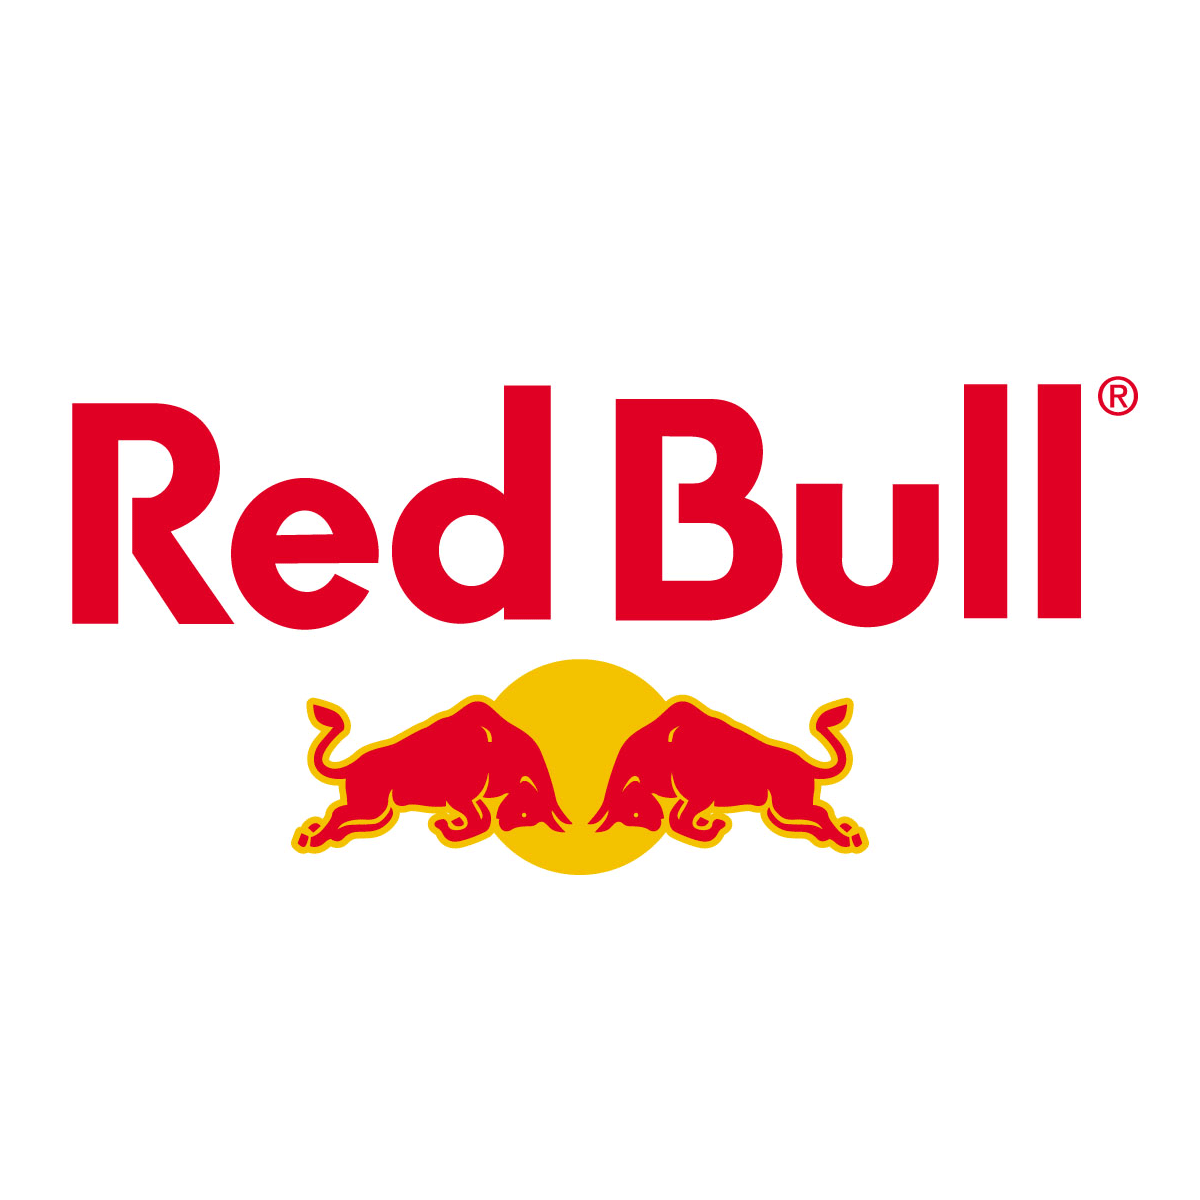 Il logo Red Bull